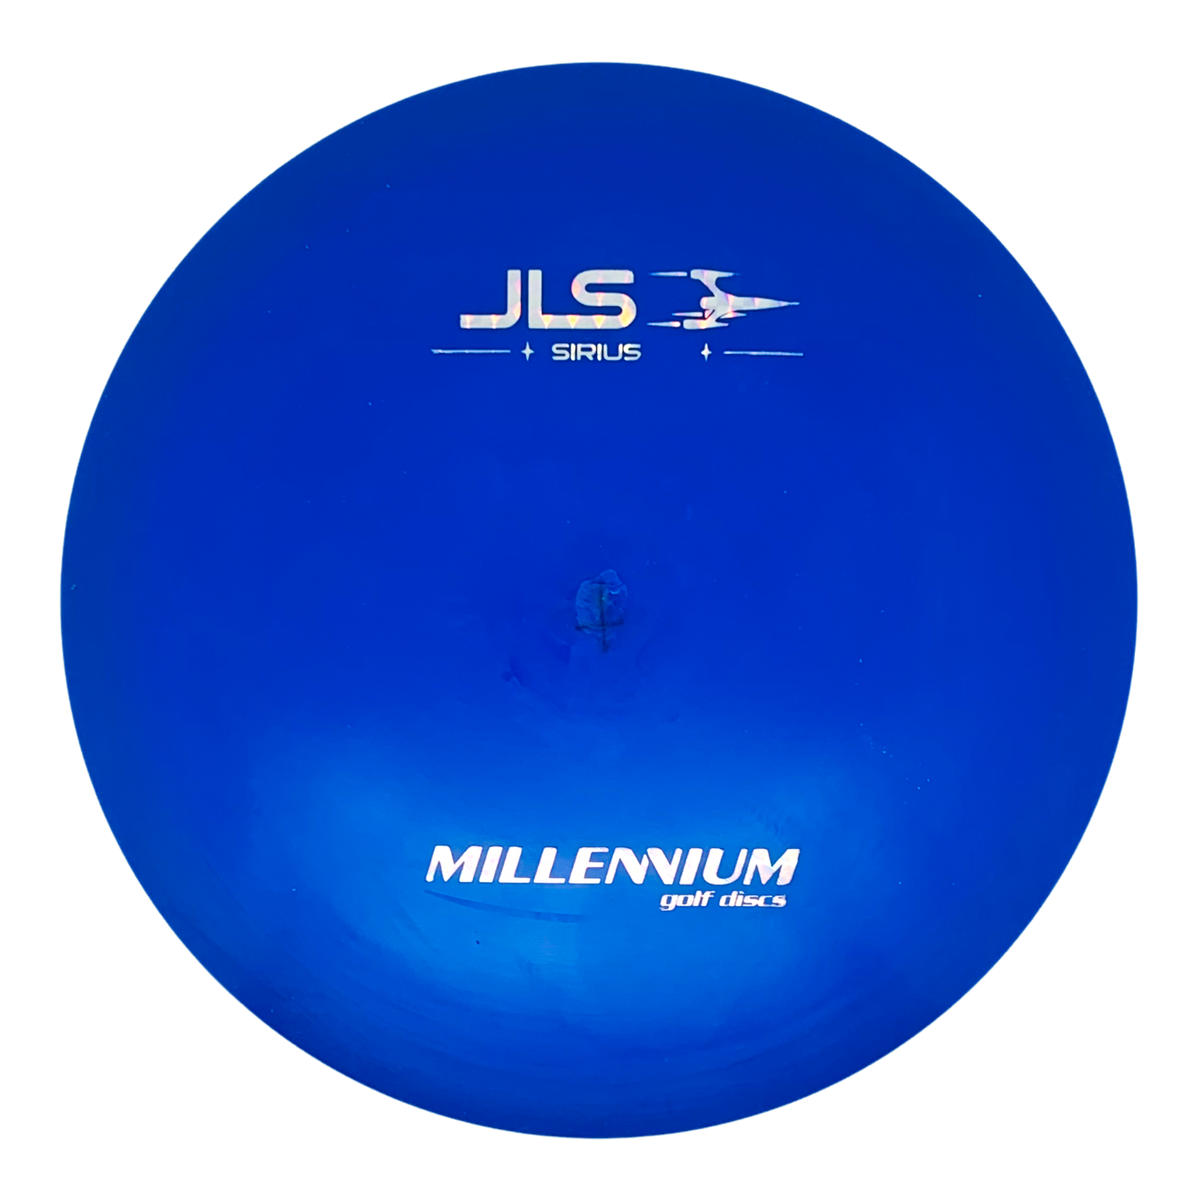 Millennium Sirius JLS - Factory Second